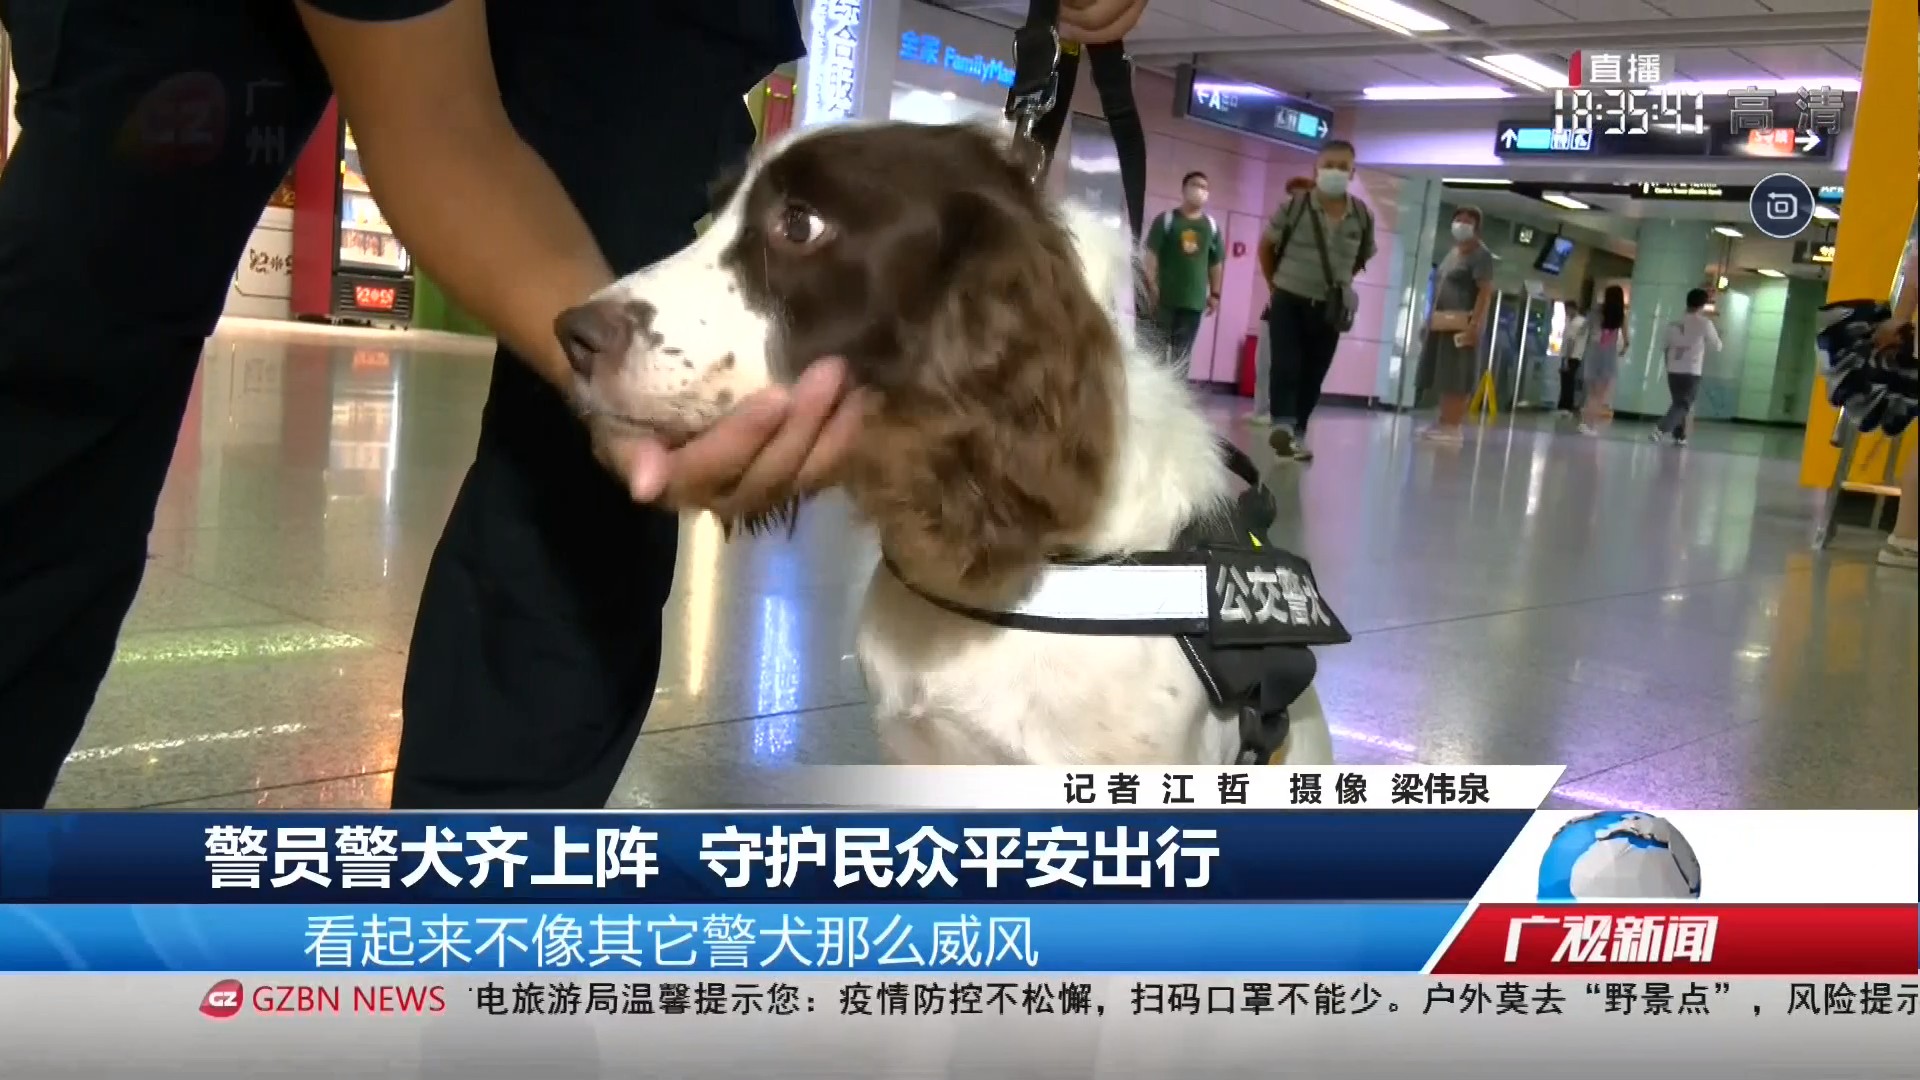 广州台综合频道 广视新闻 警员警犬齐上阵 守护民众平安出行